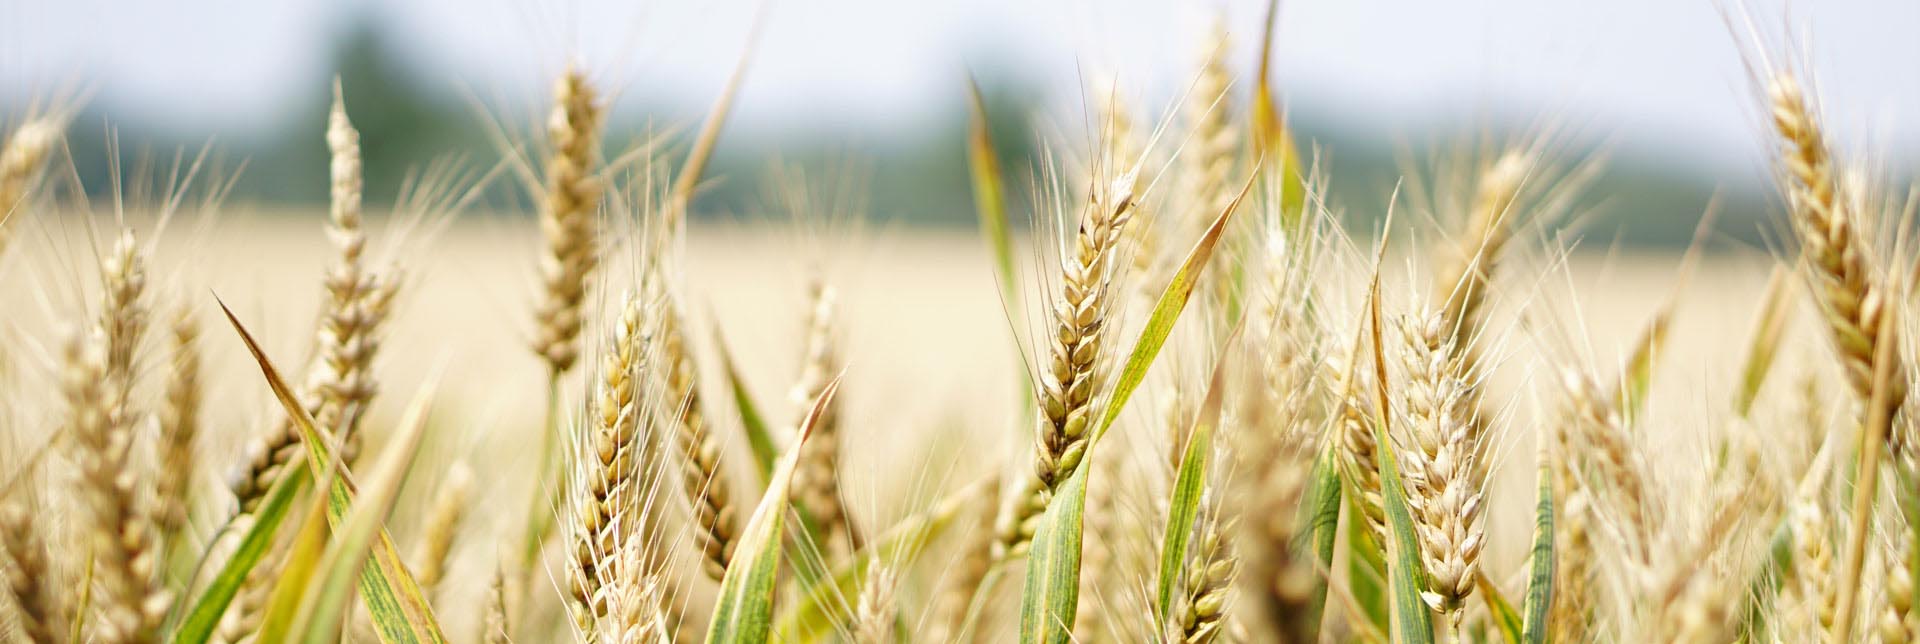 Die grosse Debatte: Sagen wir Ja oder Nein zu GMO-Food?